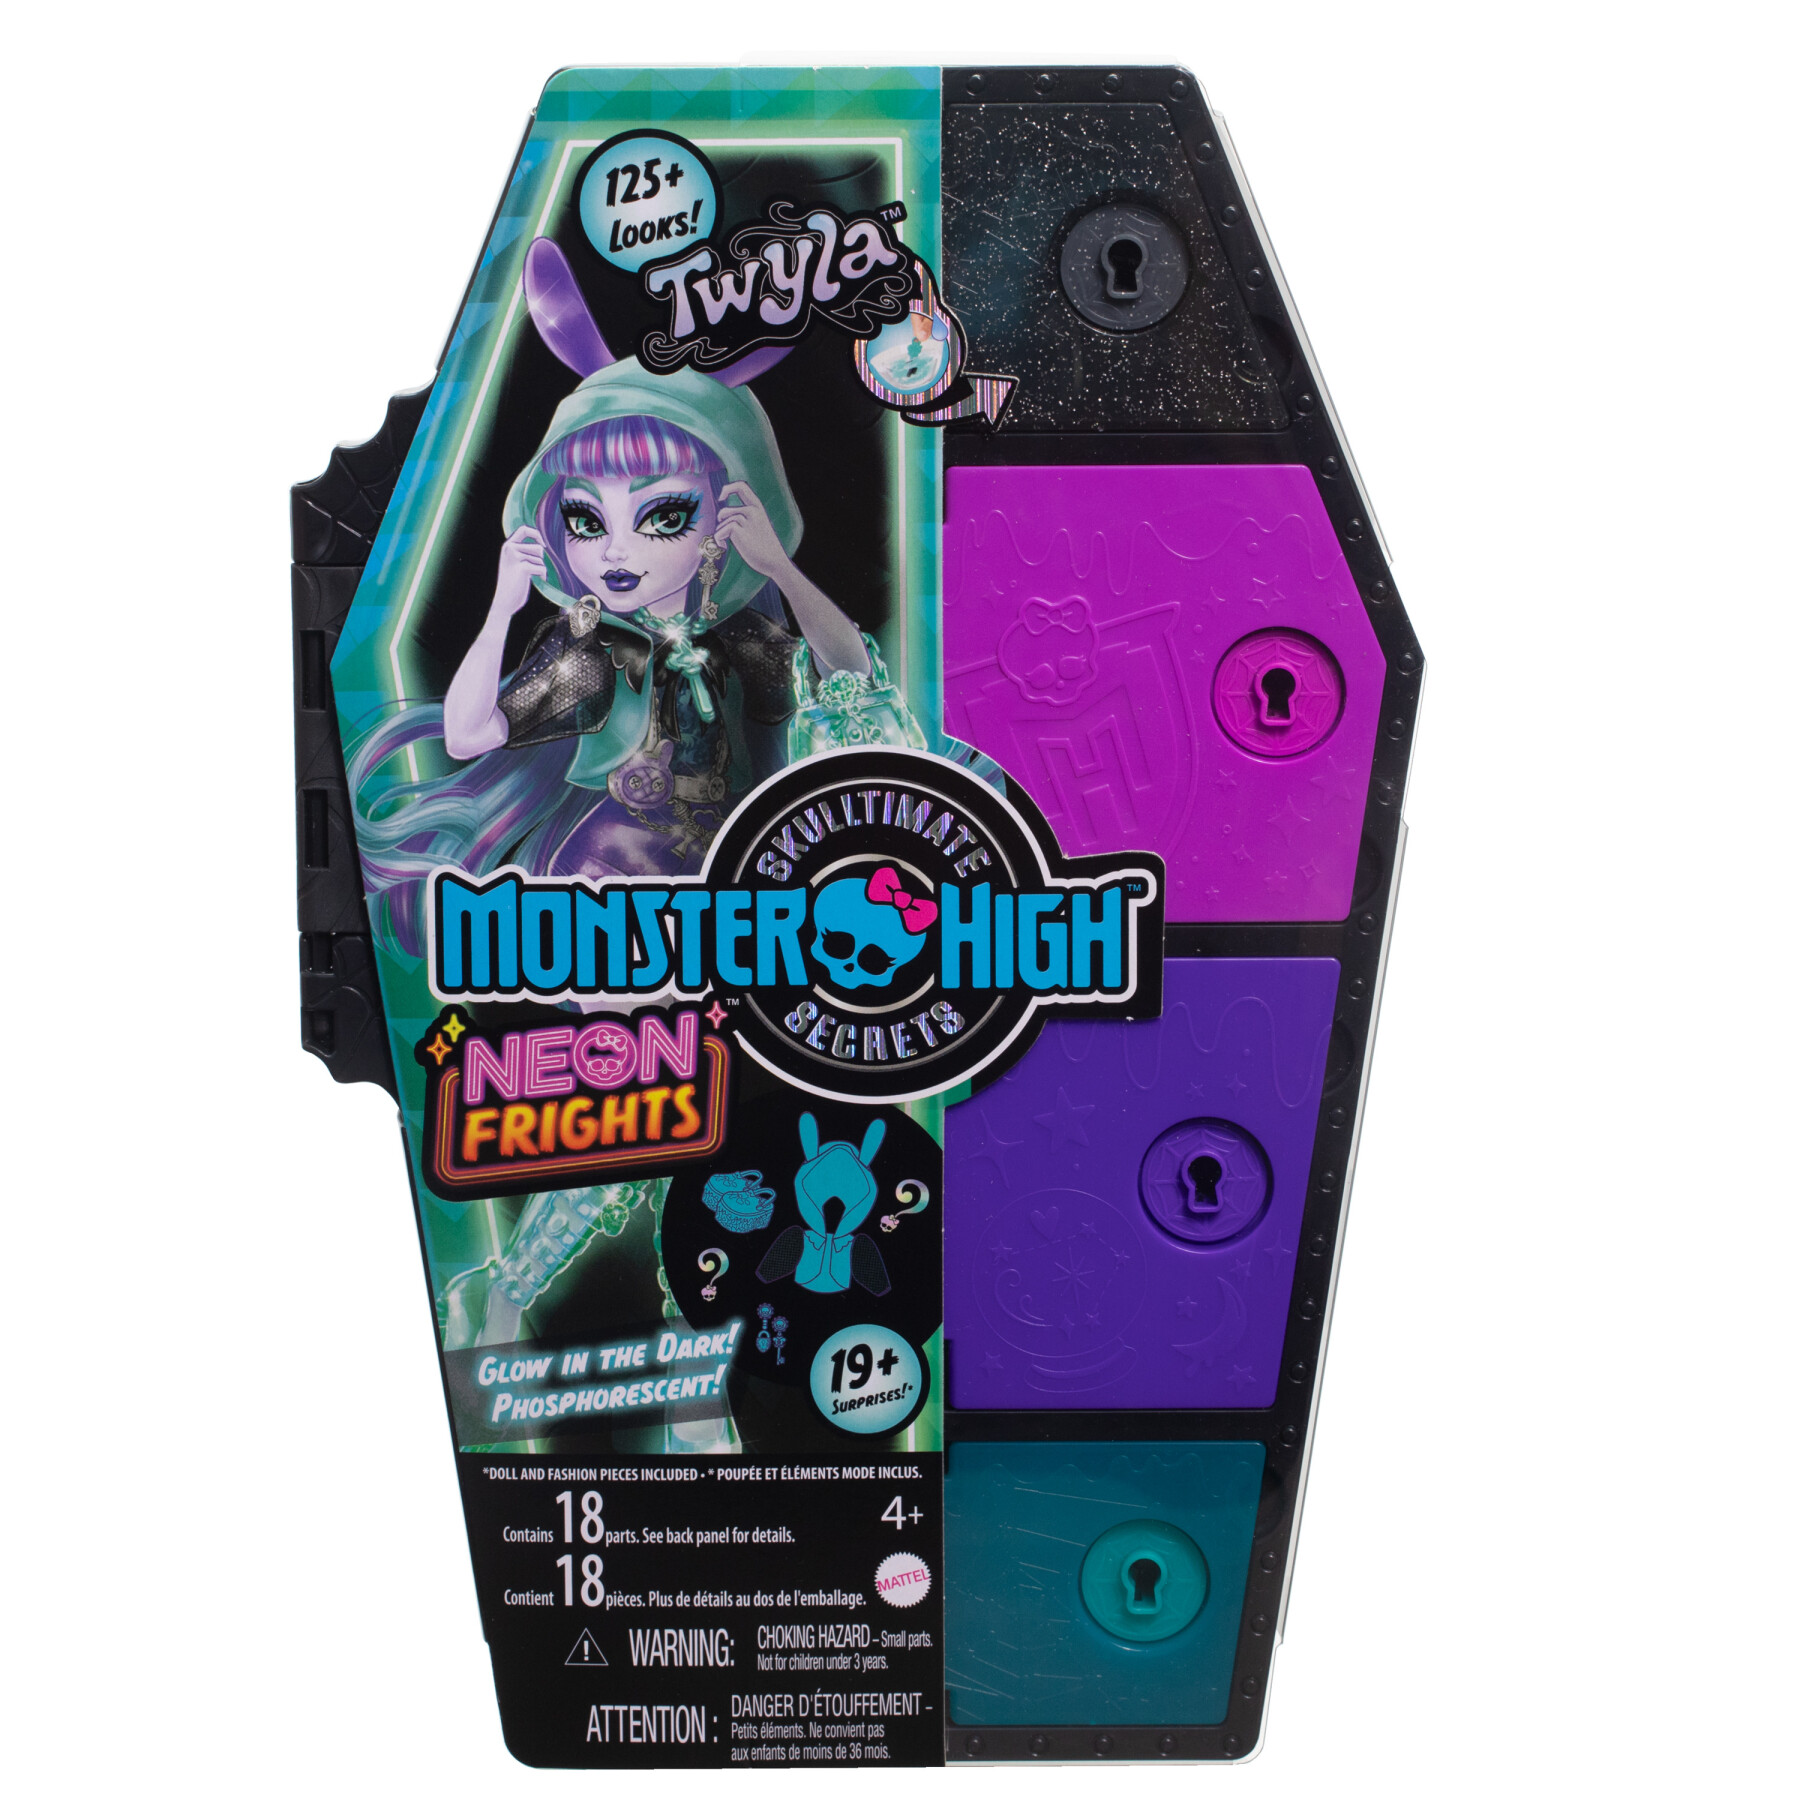 Monster high - segreti da brivido neon frights twyla, playset con bambola, abiti e armadietto per i look - Monster High